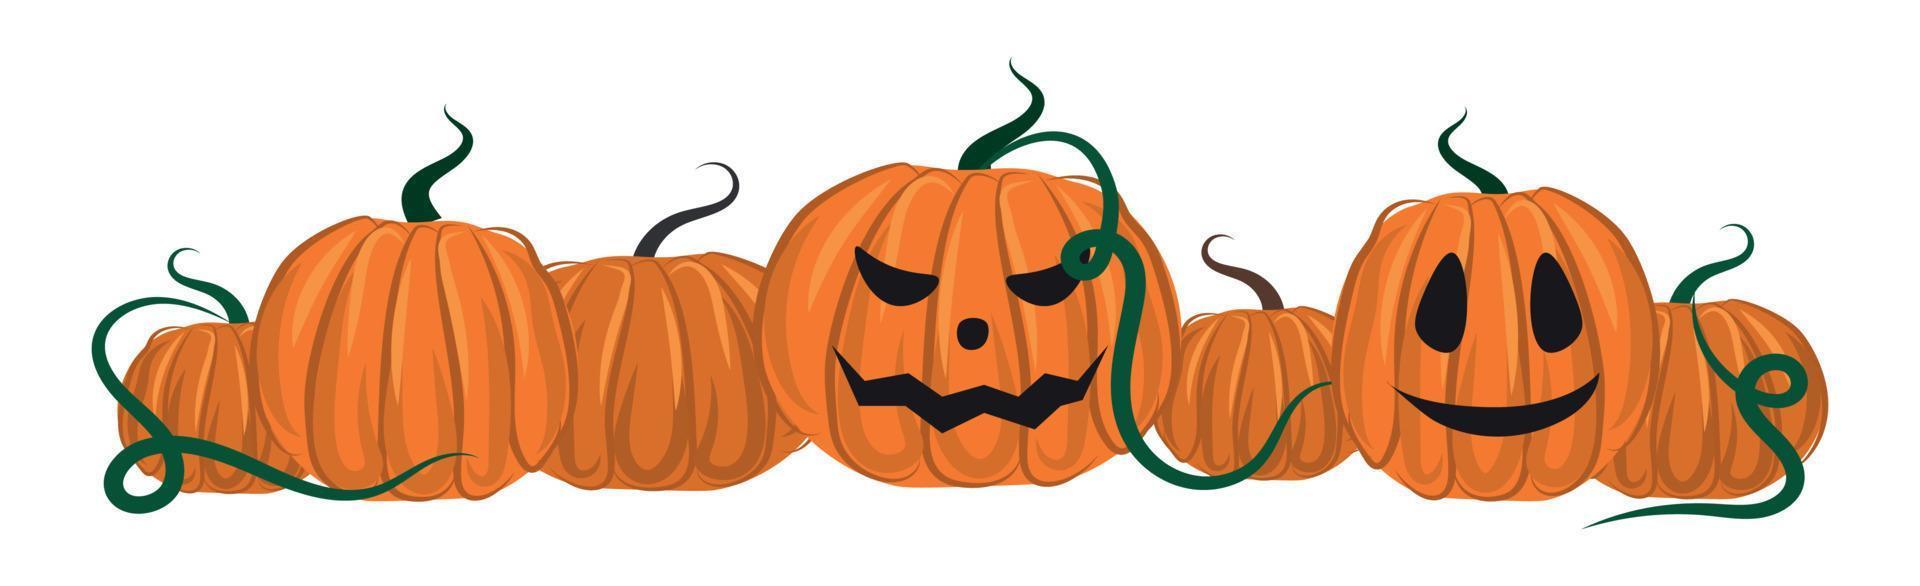 saudação de halloween dos mortos, abóboras laranja em um fundo branco - vetor